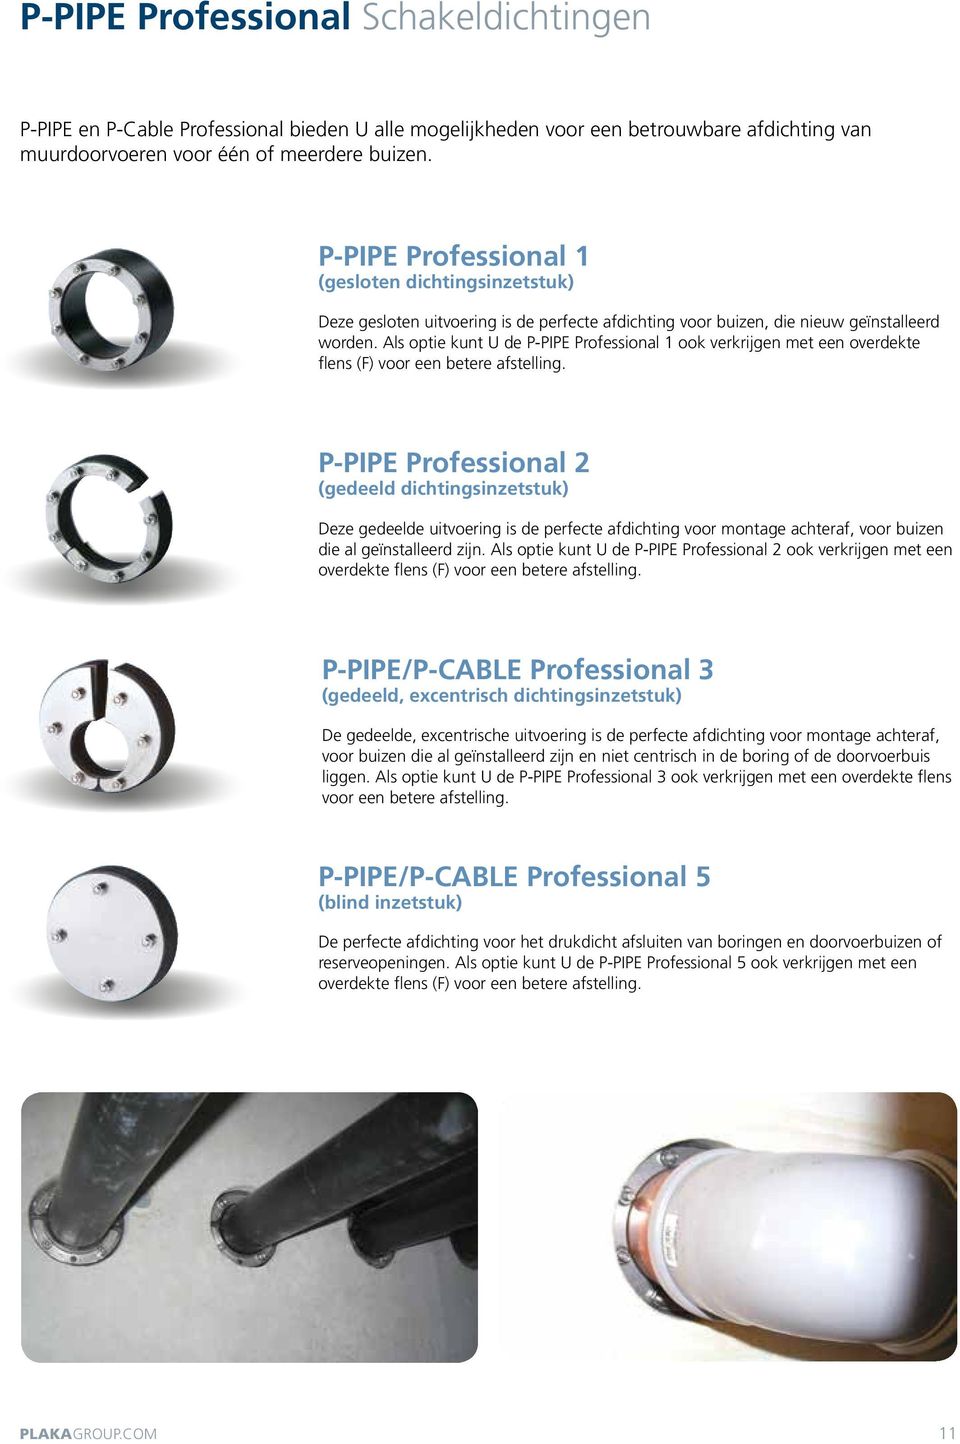 Als optie kunt U de P-PIPE Professional 1 ook verkrijgen met een overdekte flens (F) voor een betere afstelling.